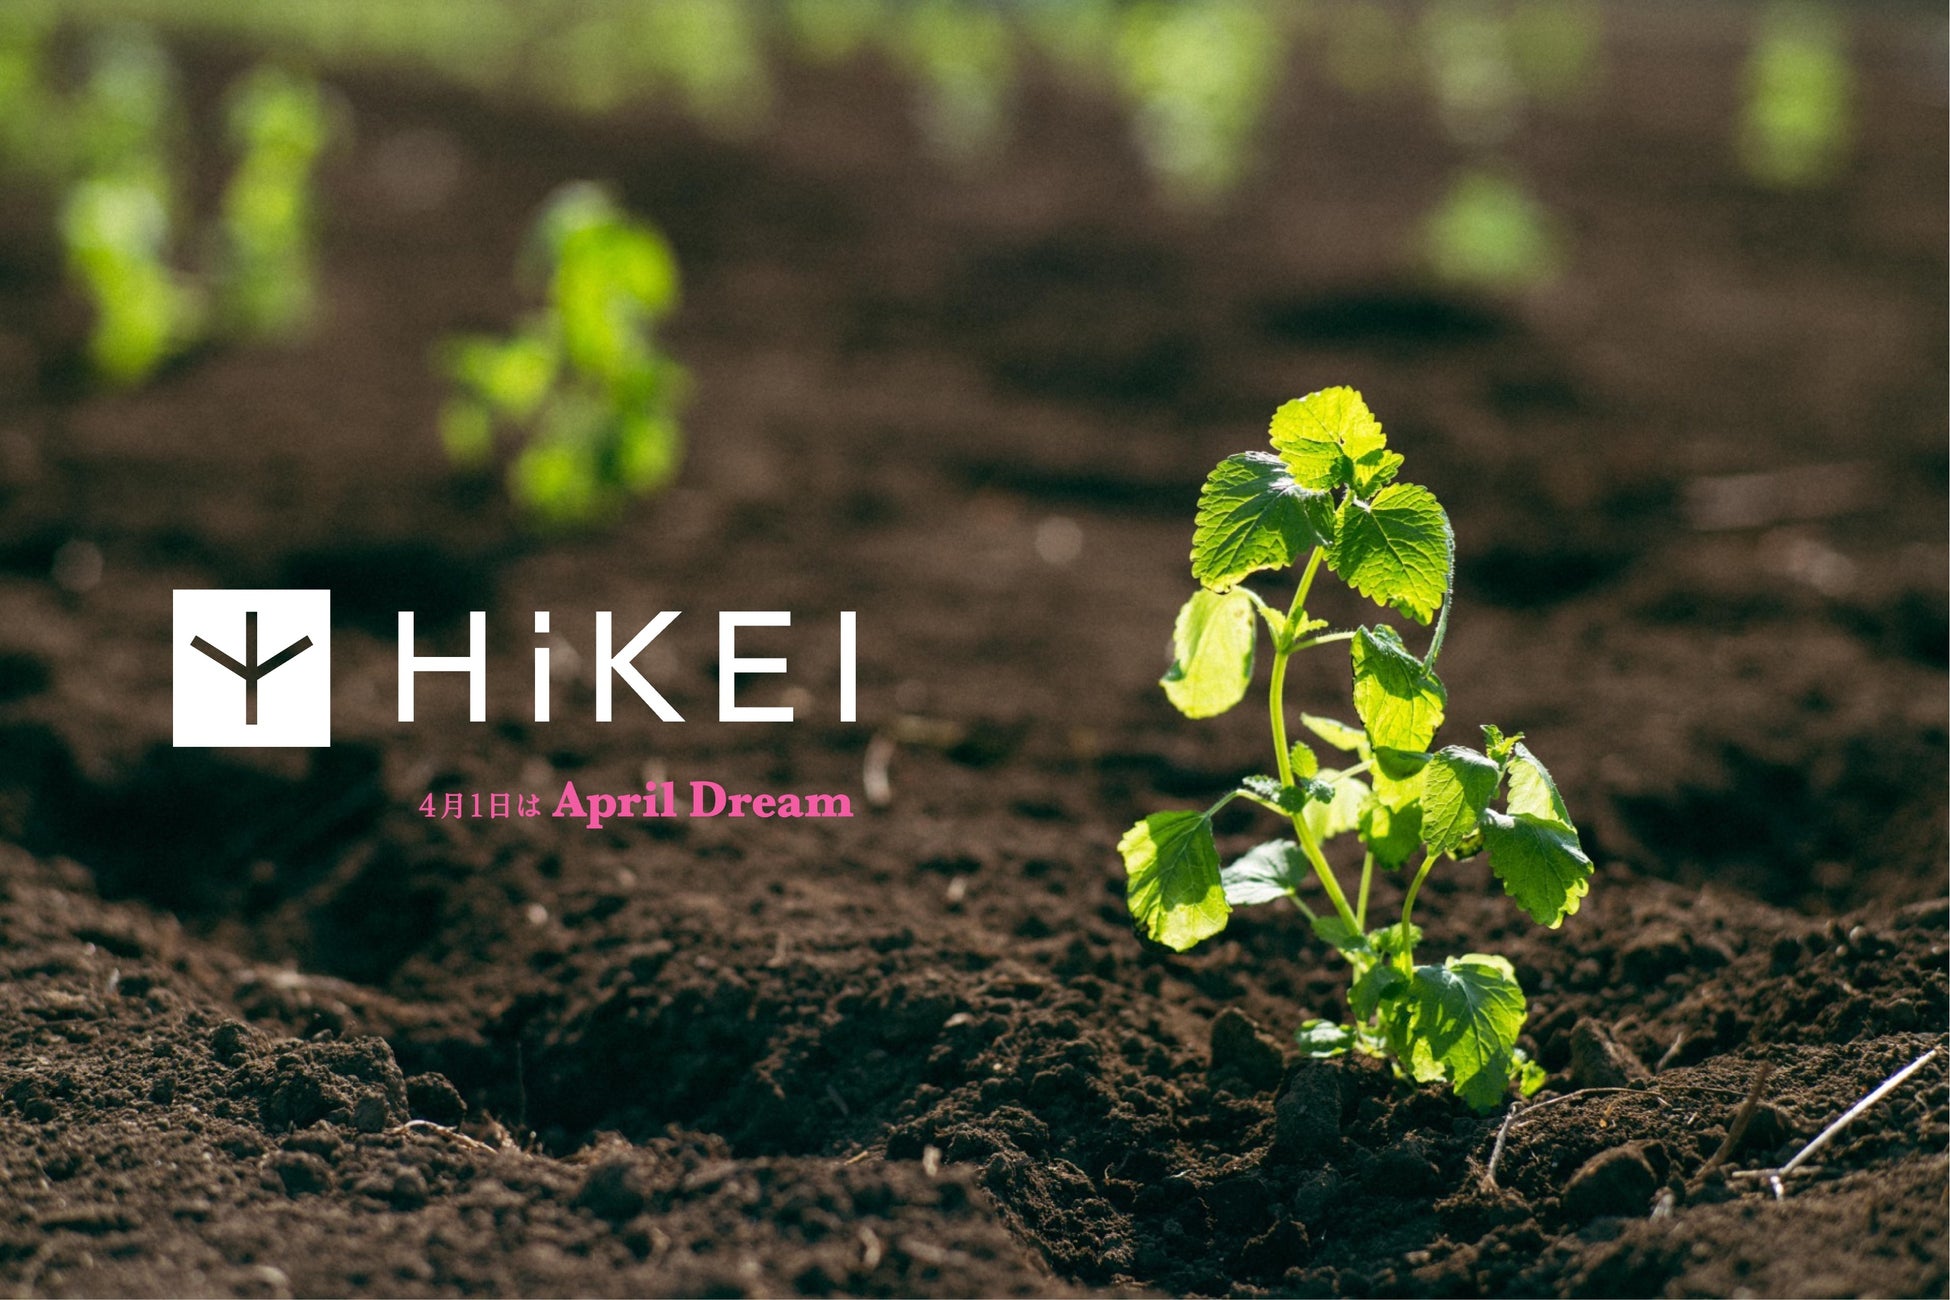 フレグランスを展開するHiKEIが耕作放棄地1,930ha削減を目指す。開墾した畑で収穫した作物を活用し、化粧品やハーブティーの商品開発をスタート【株式会社フリップザミント】のサブ画像1